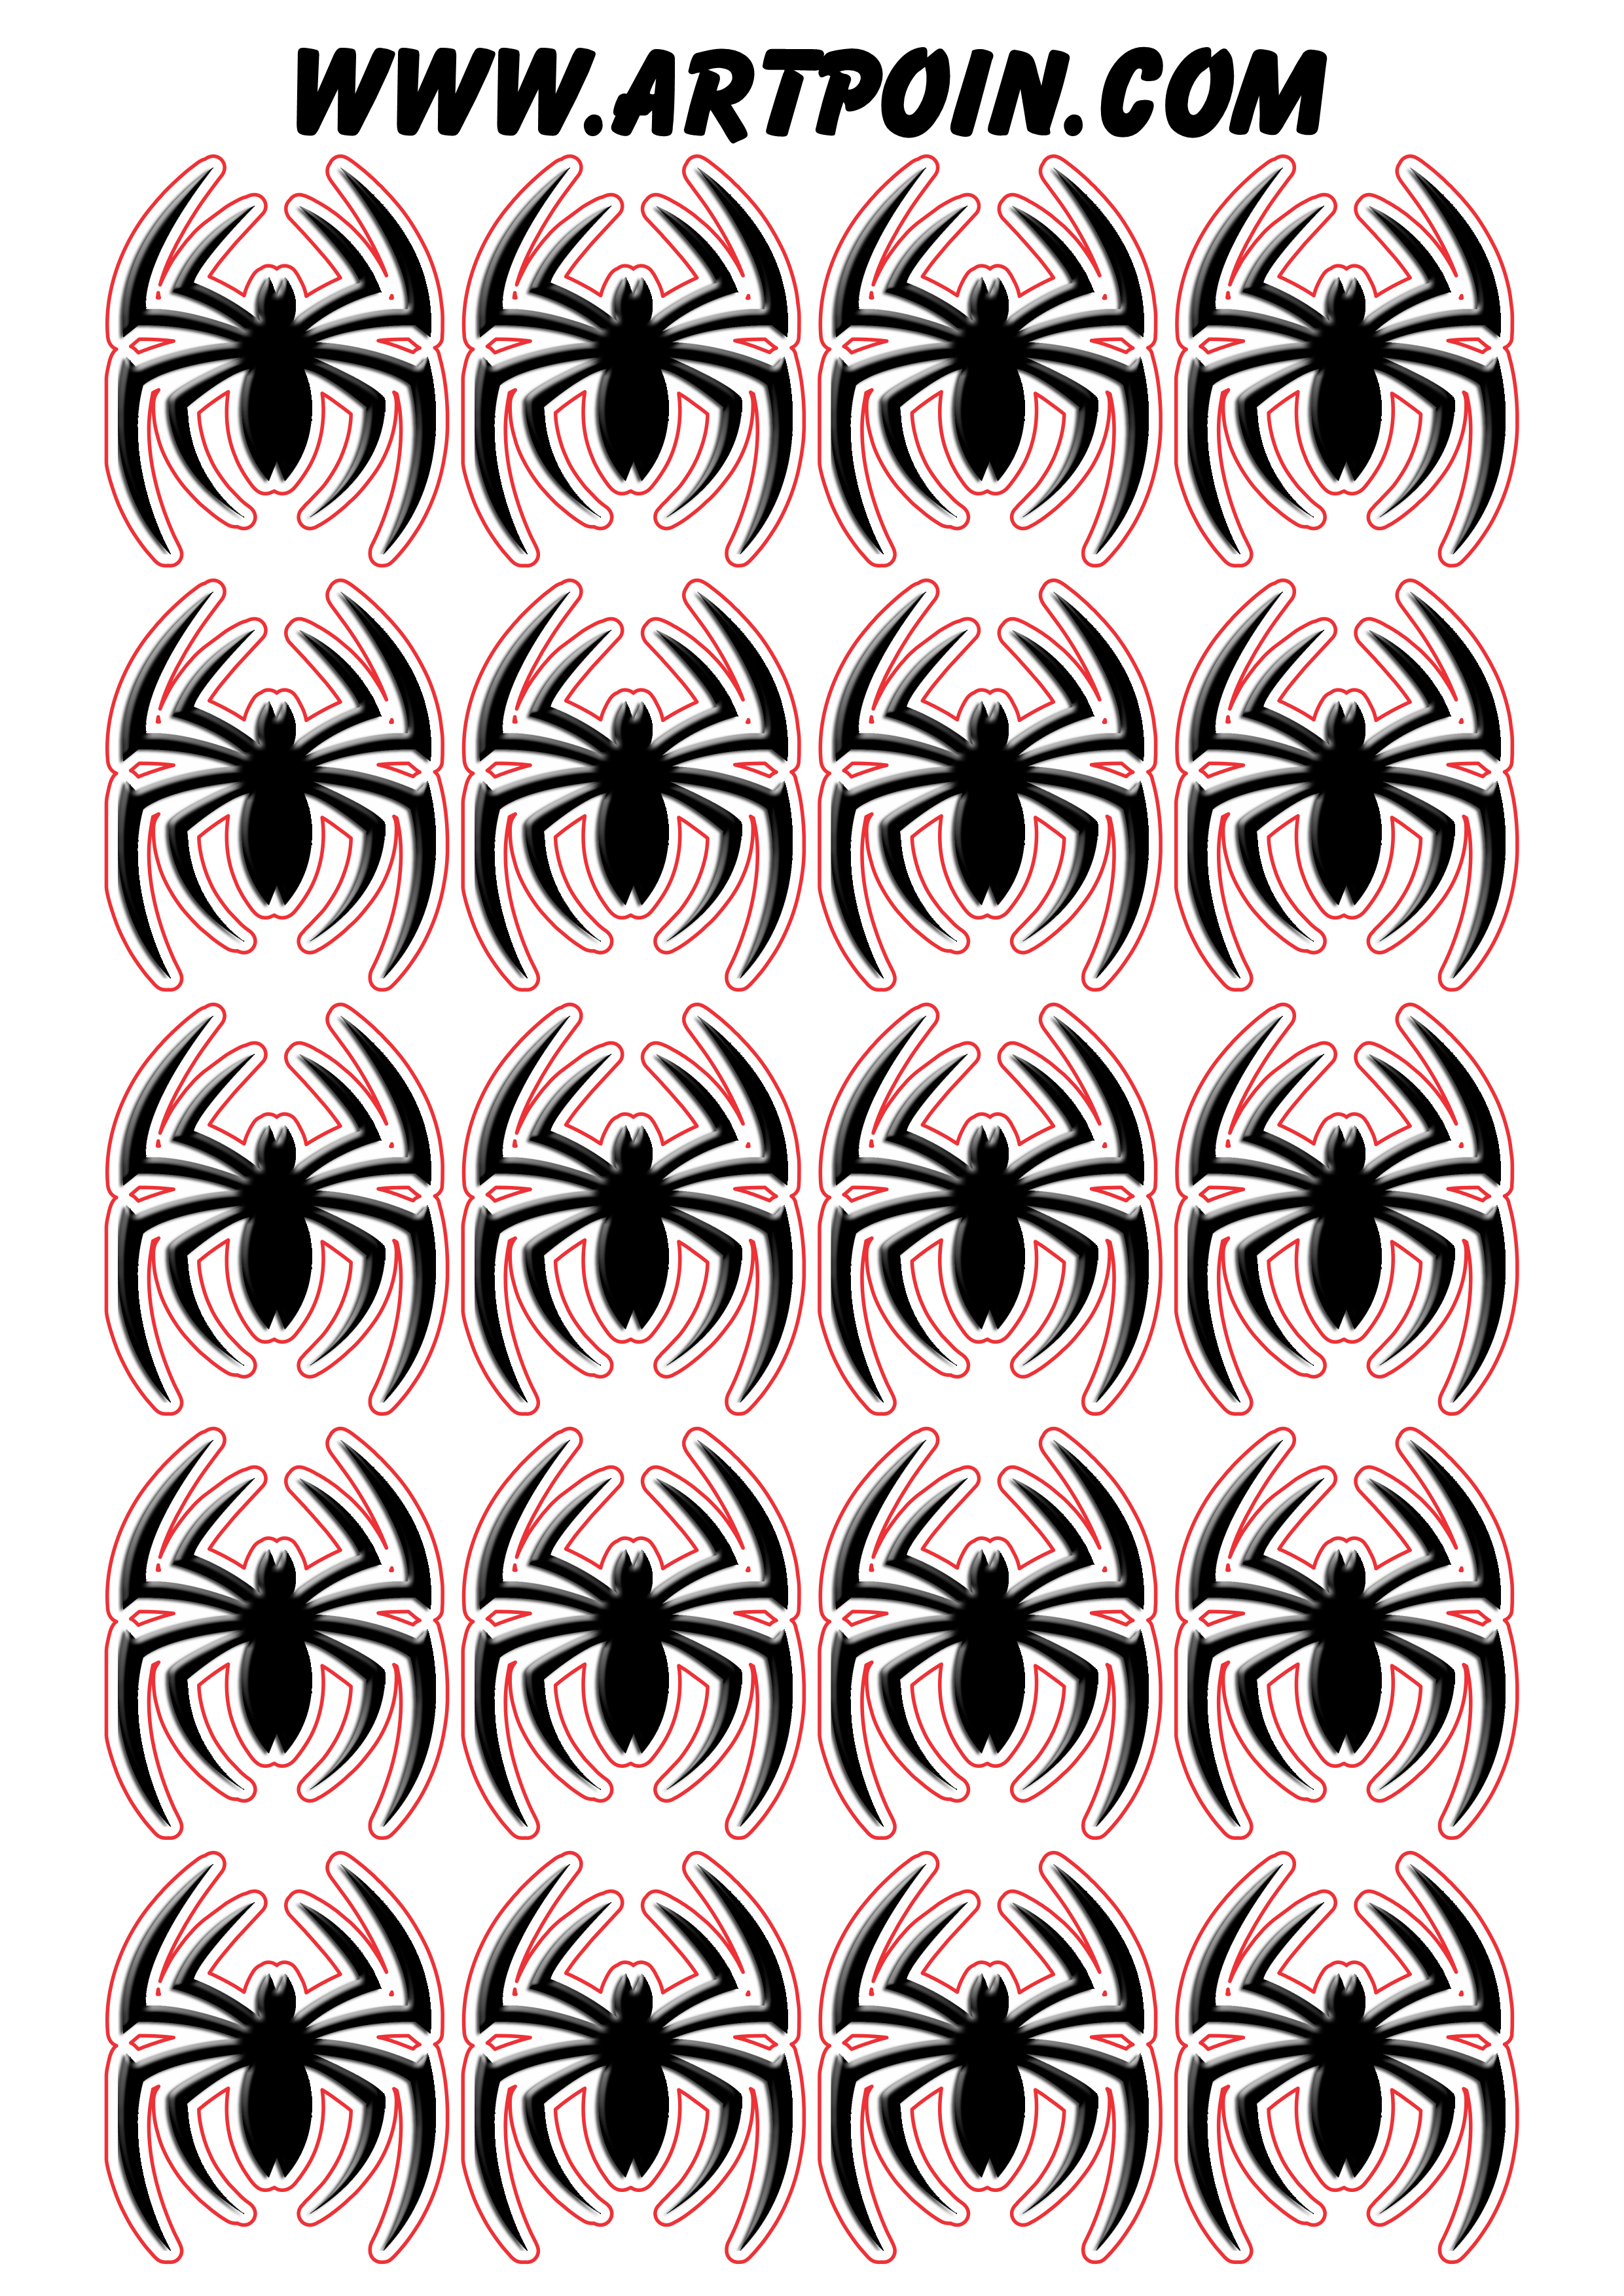 Homem aranha spider man adesivo tag sticker logo imagens com contorno decoração de festa artes gráficas png